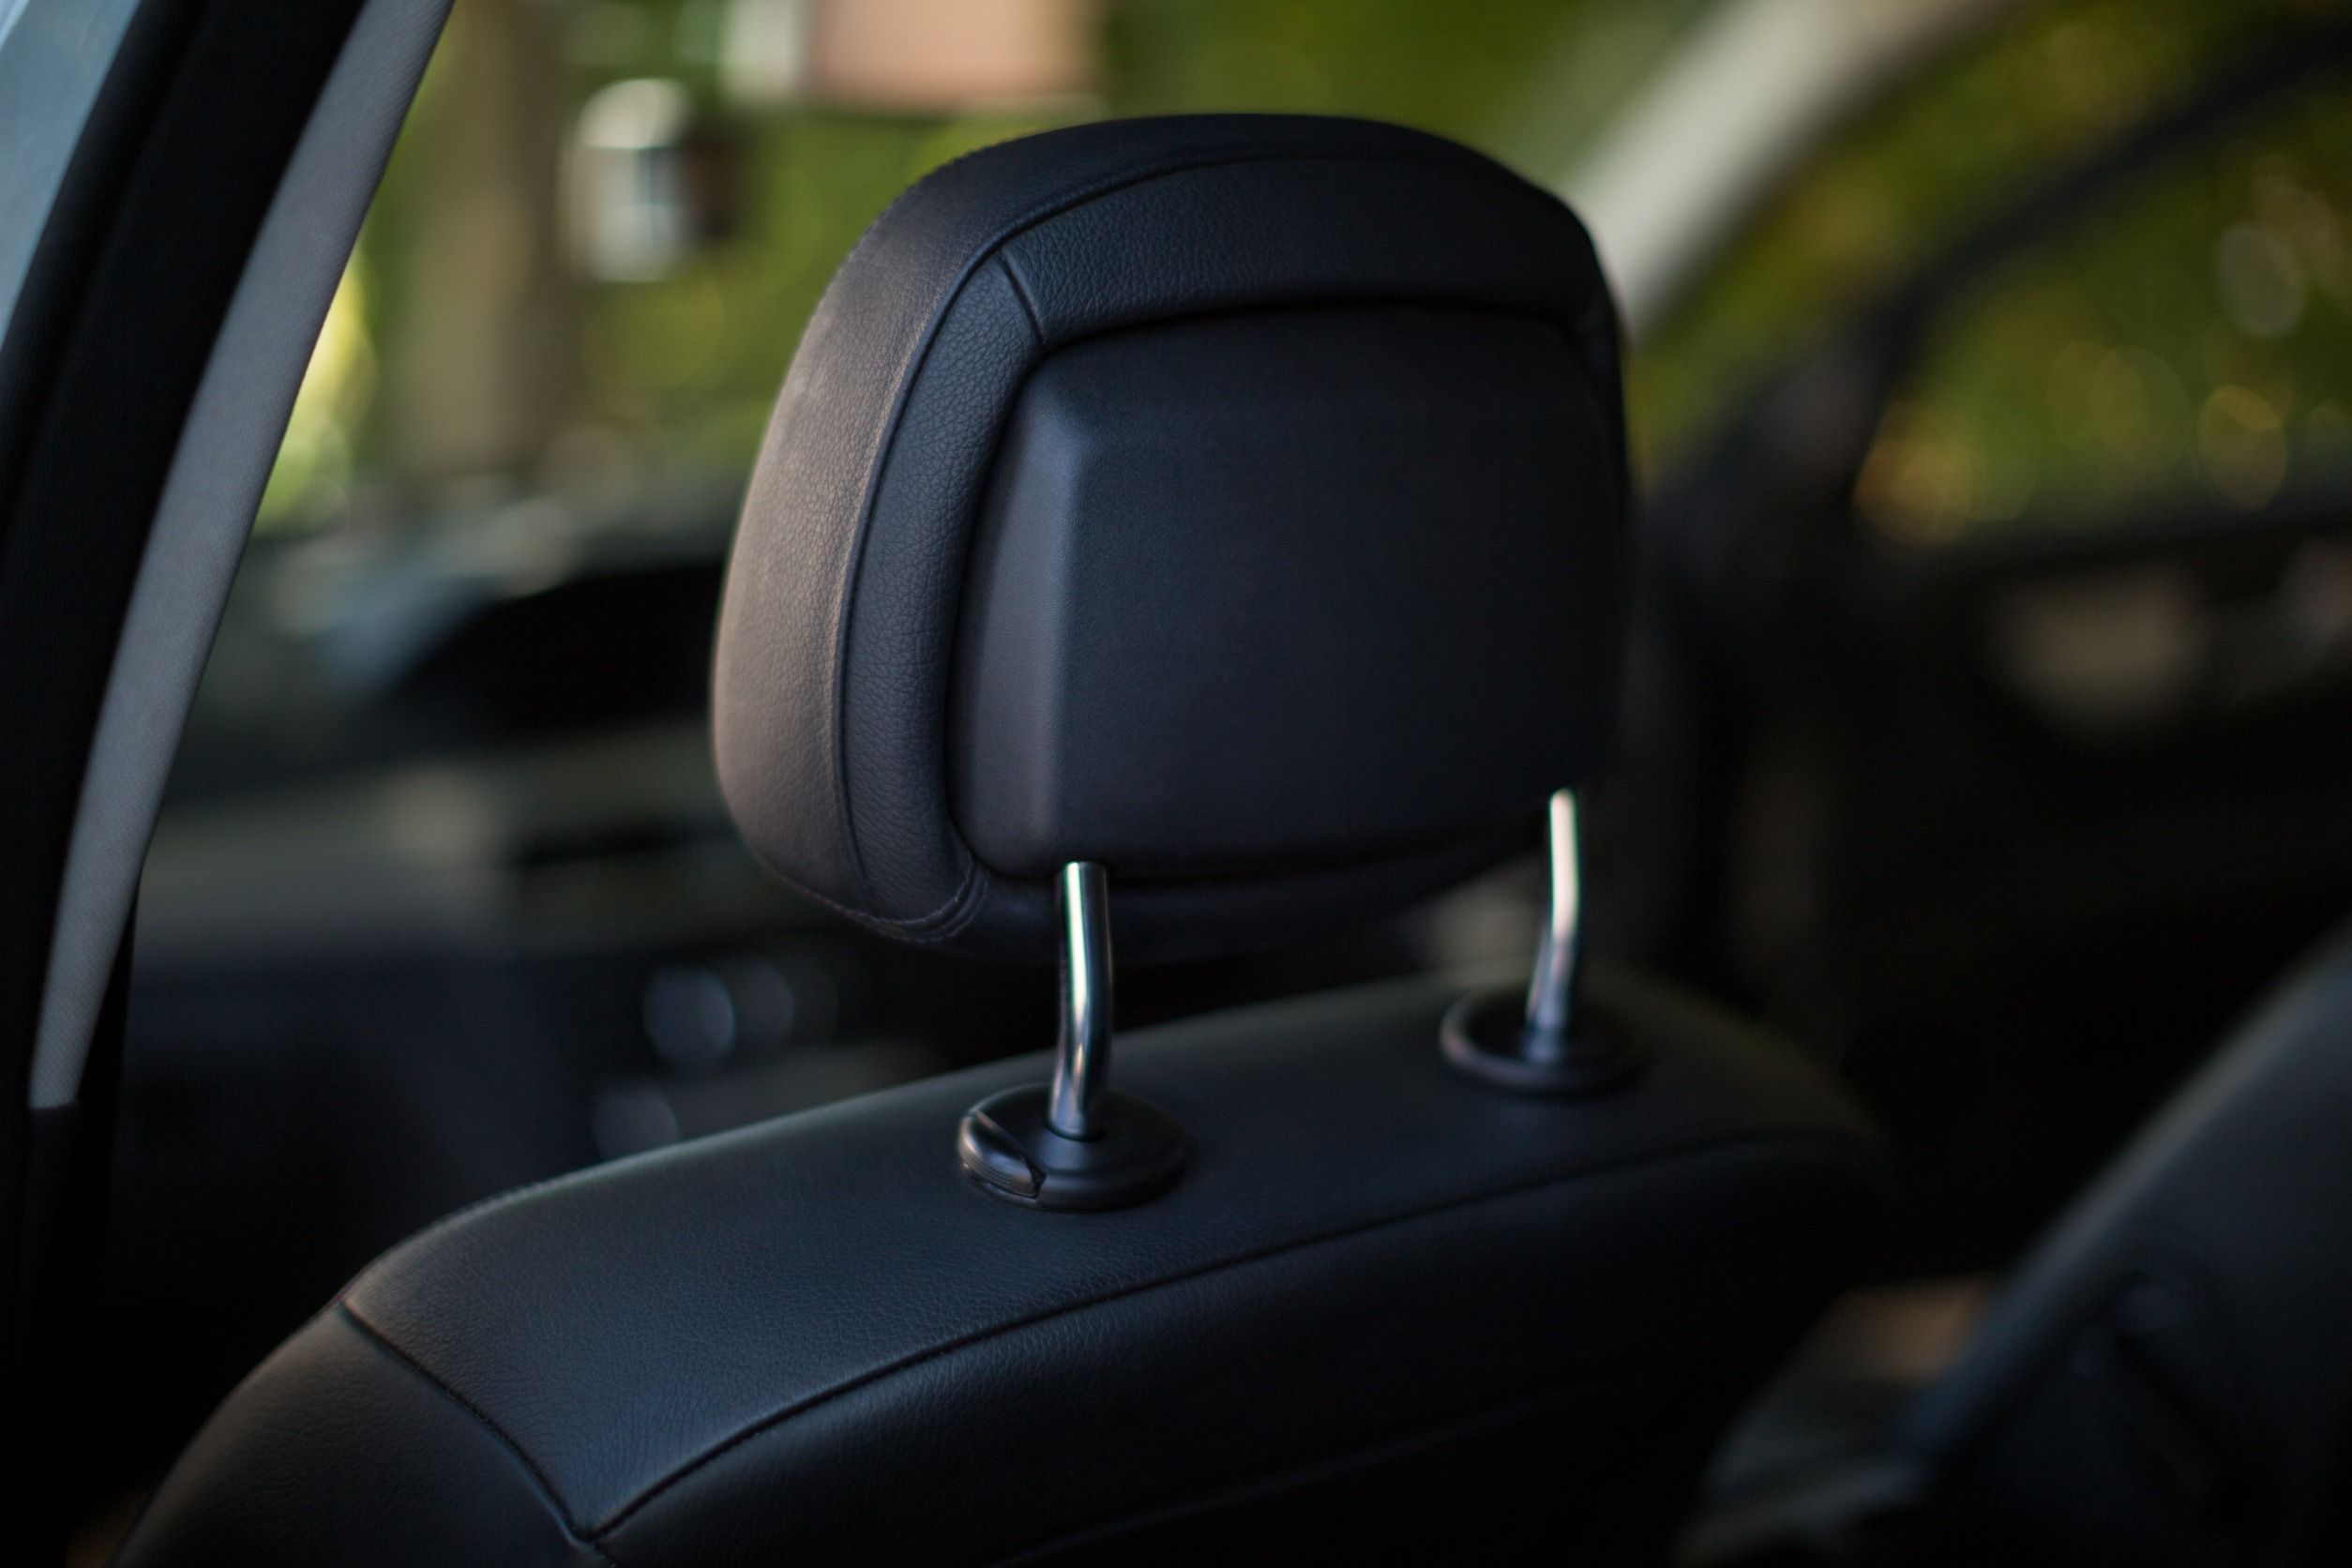 Cómo el reposacabezas del asiento del coche te puede salvar la vida